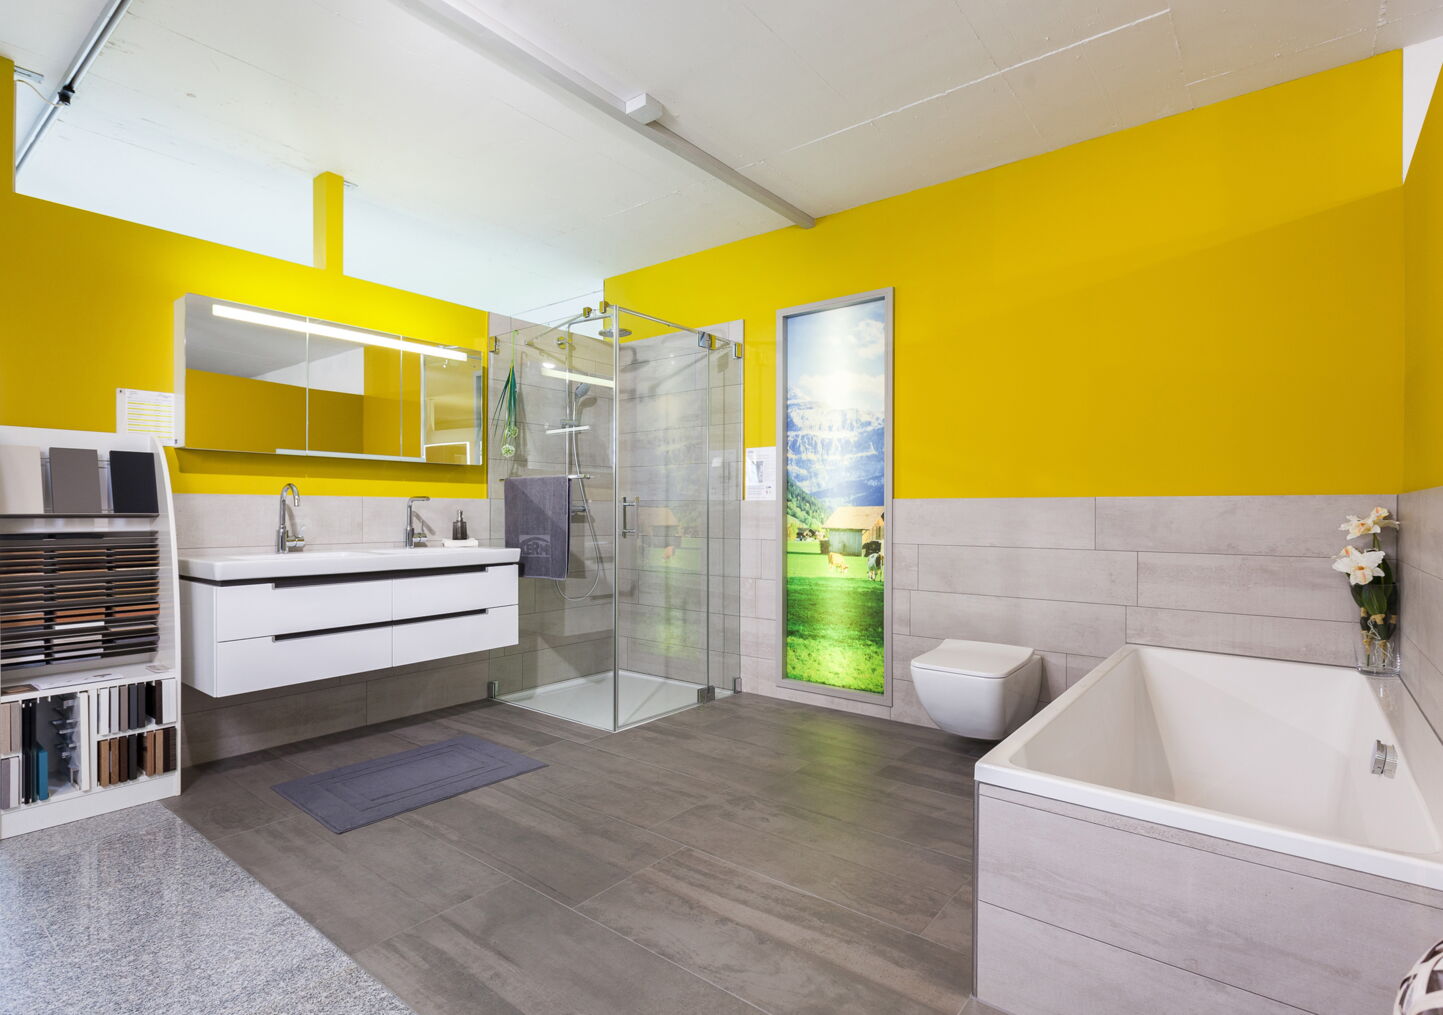 Badmöbel und Spiegelschränke in Showroom mit gelber Wand